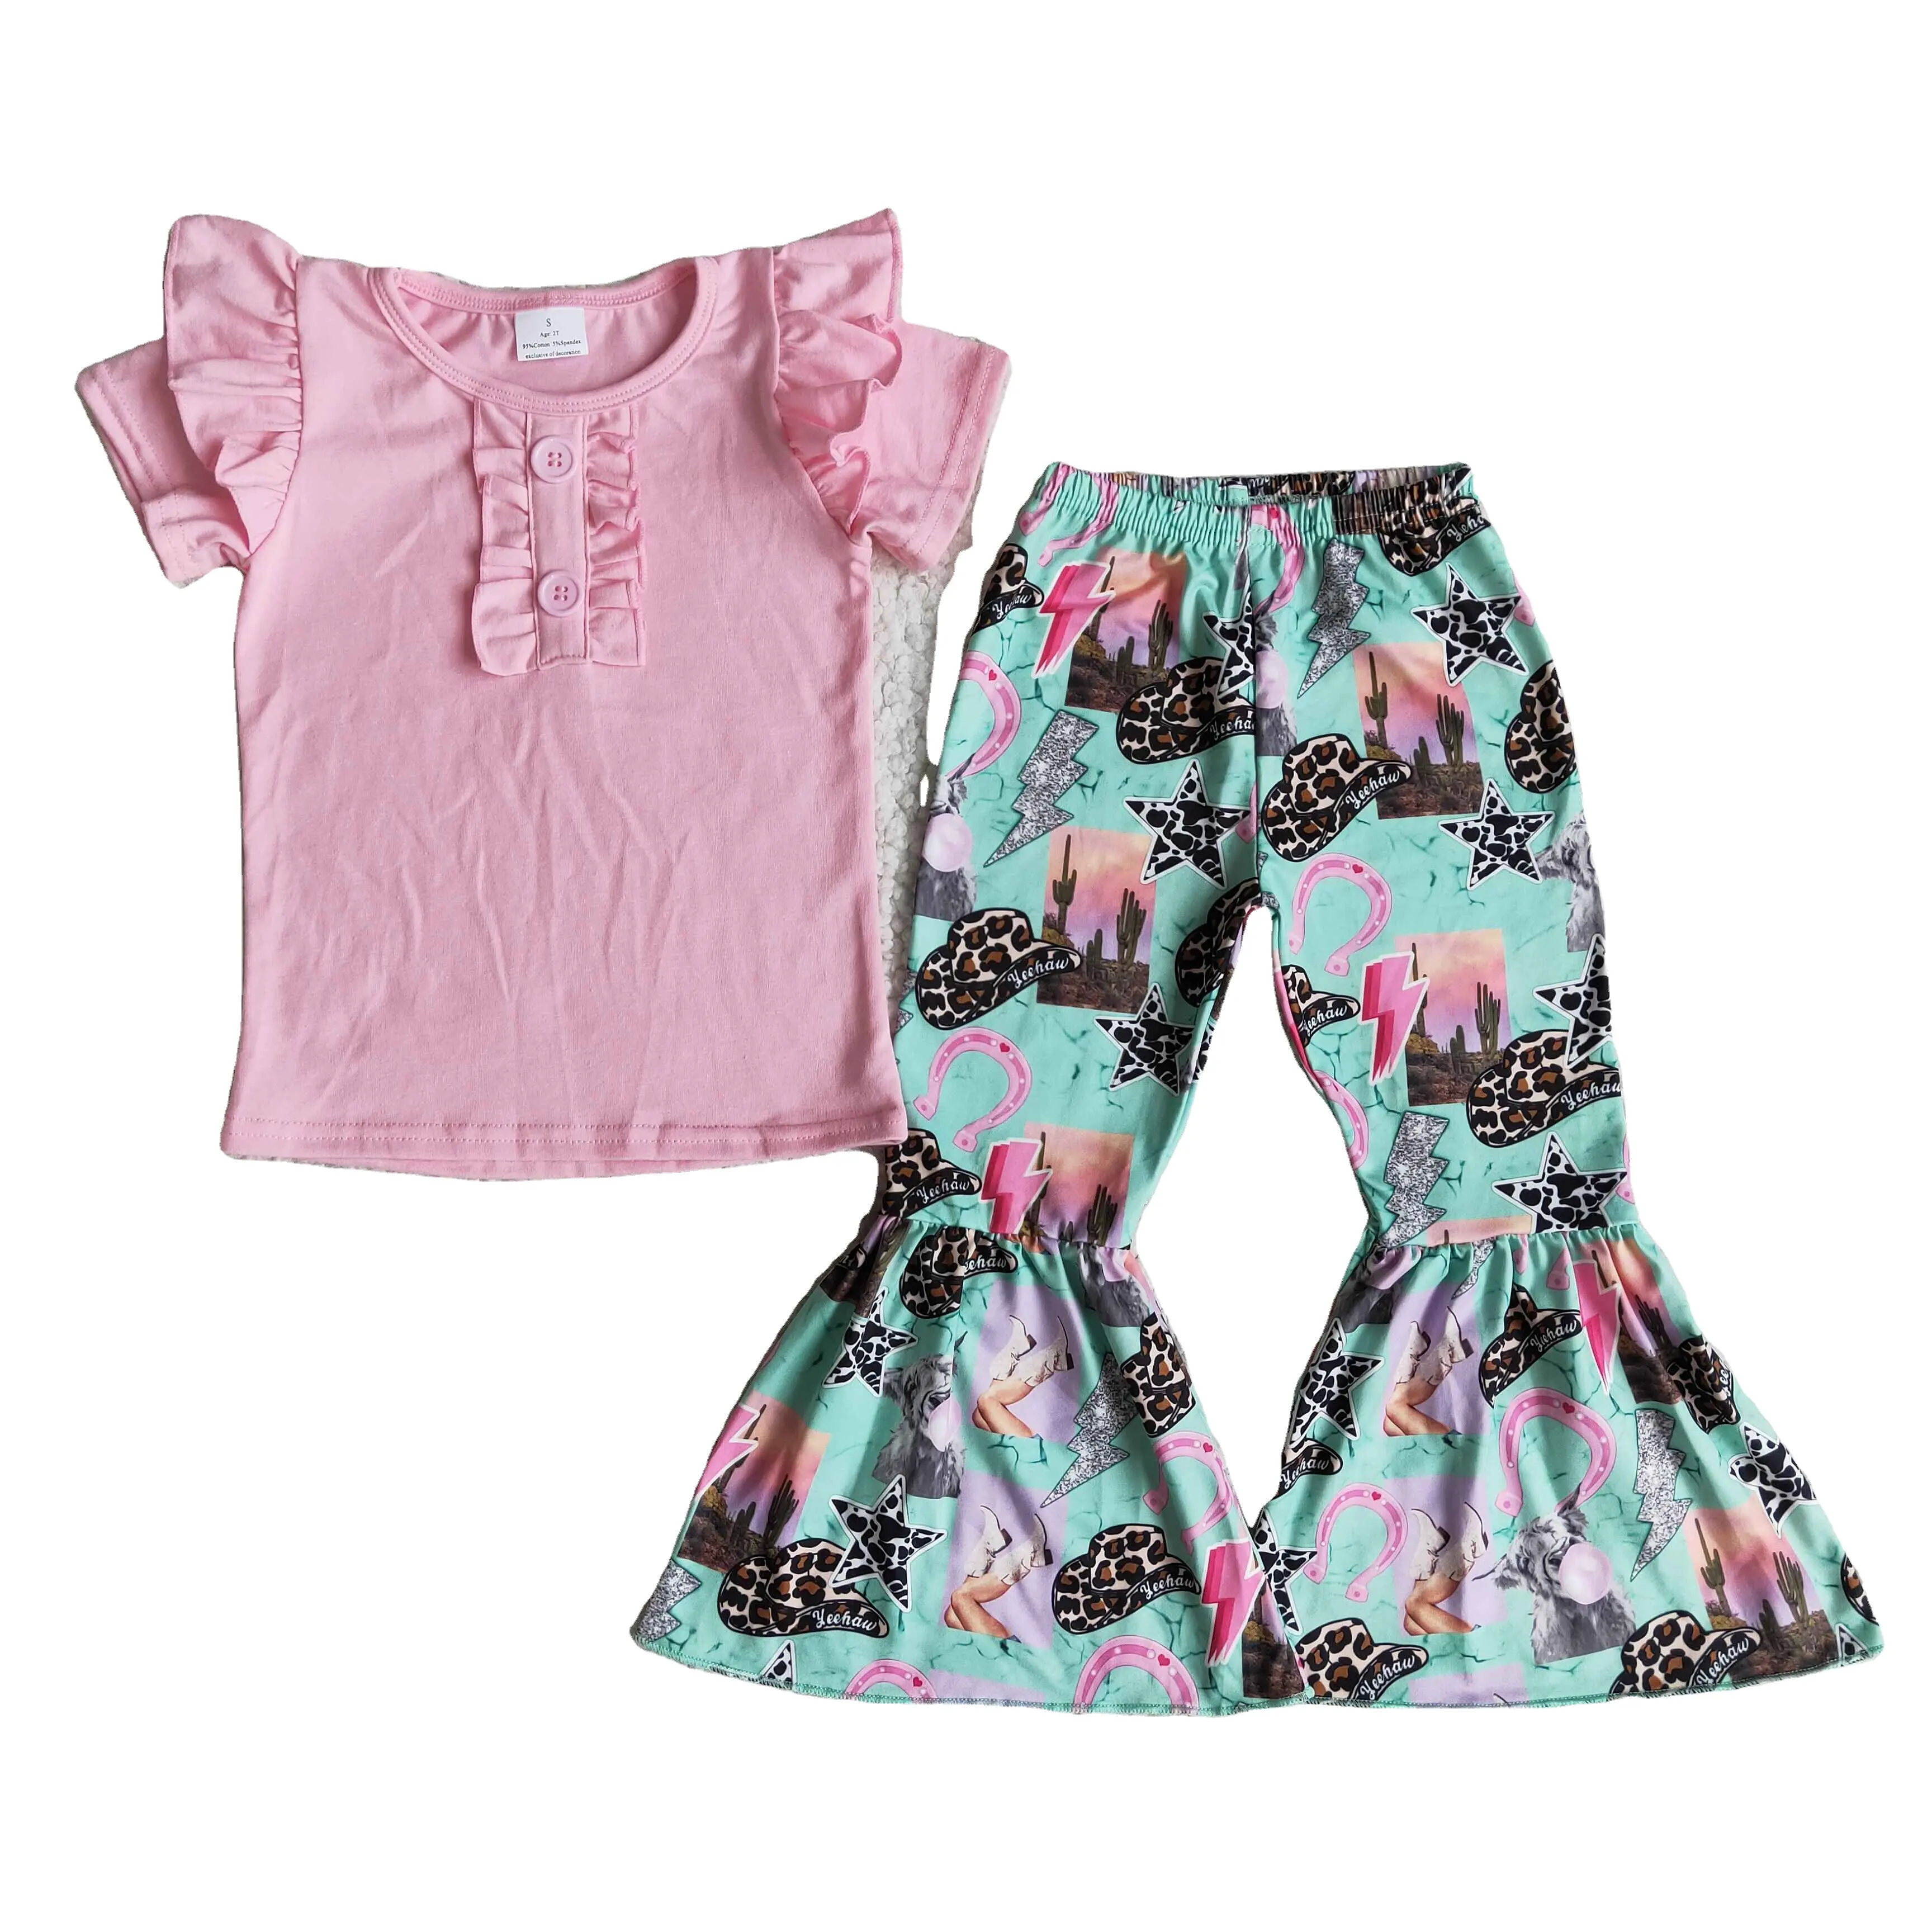 B2-11 RTS Conjunto de roupas infantis para meninas, promoção com desconto, com fim de vendas, bem-vindo a comprar roupas infantis para meninas